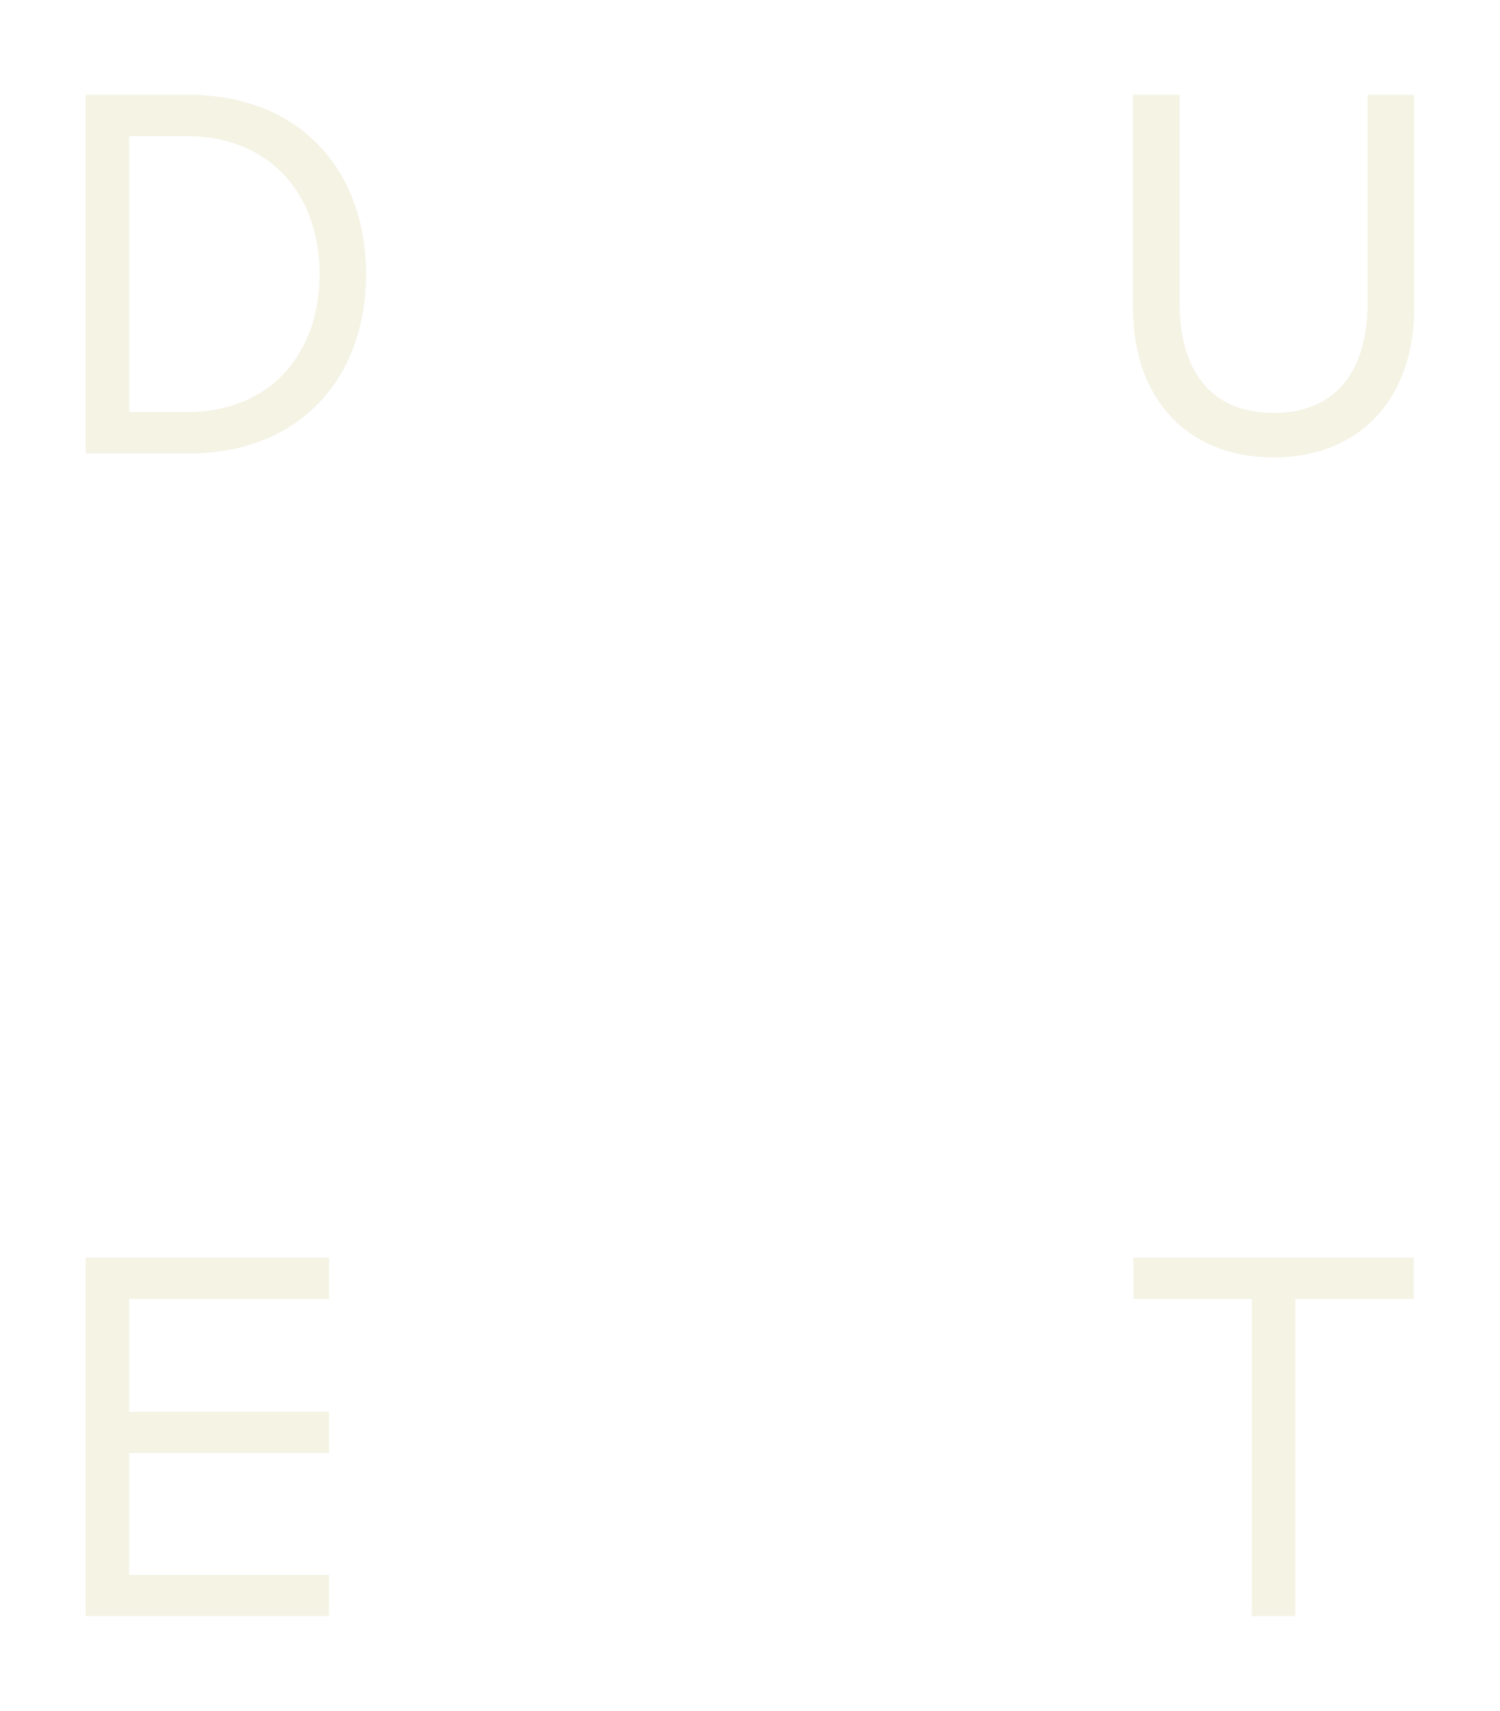 DUET